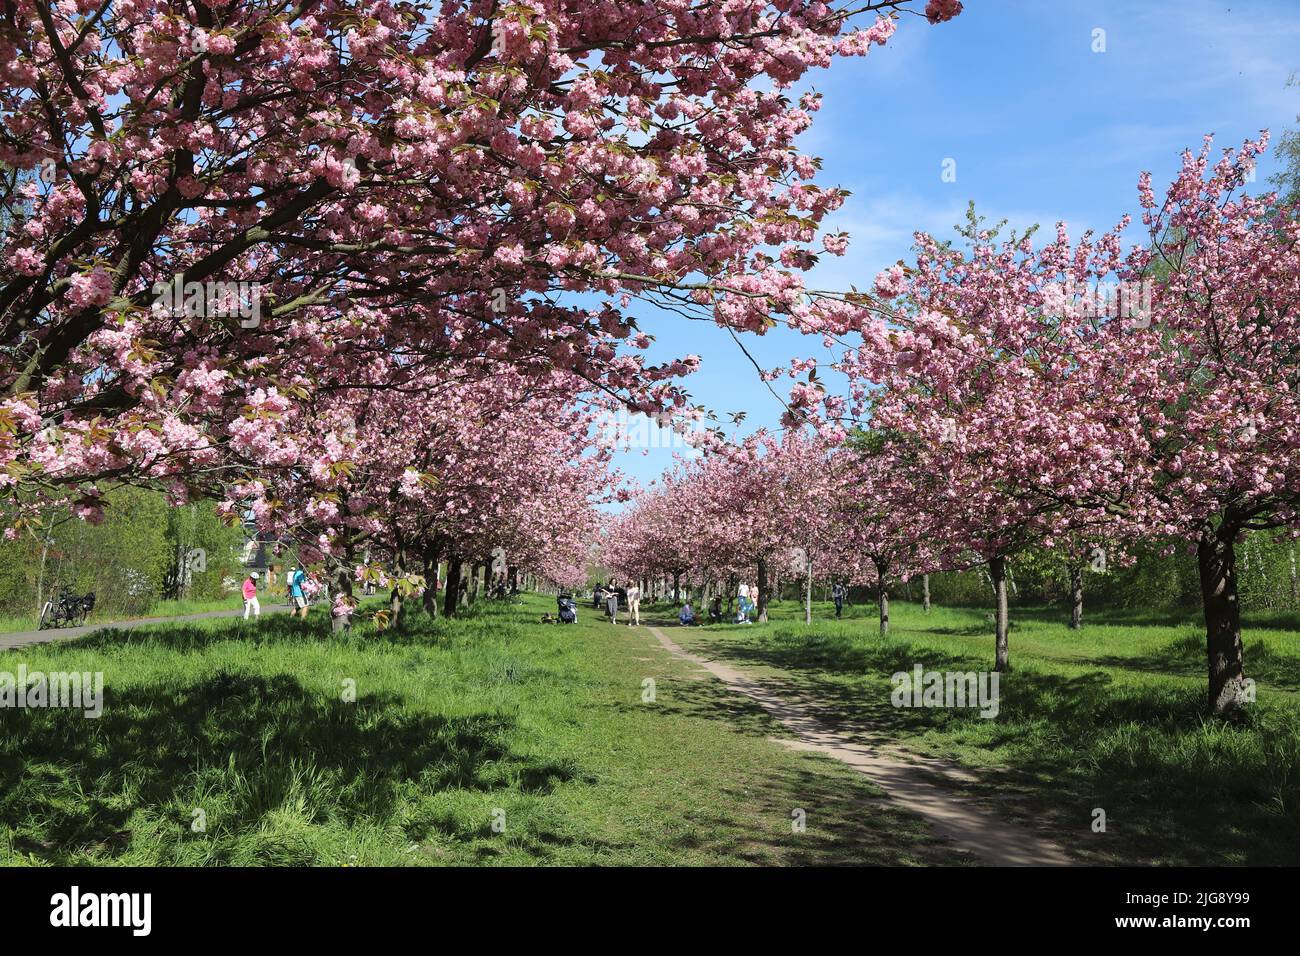 Germany, Berlin, wall way, cherry blossom avenue Stock Photo